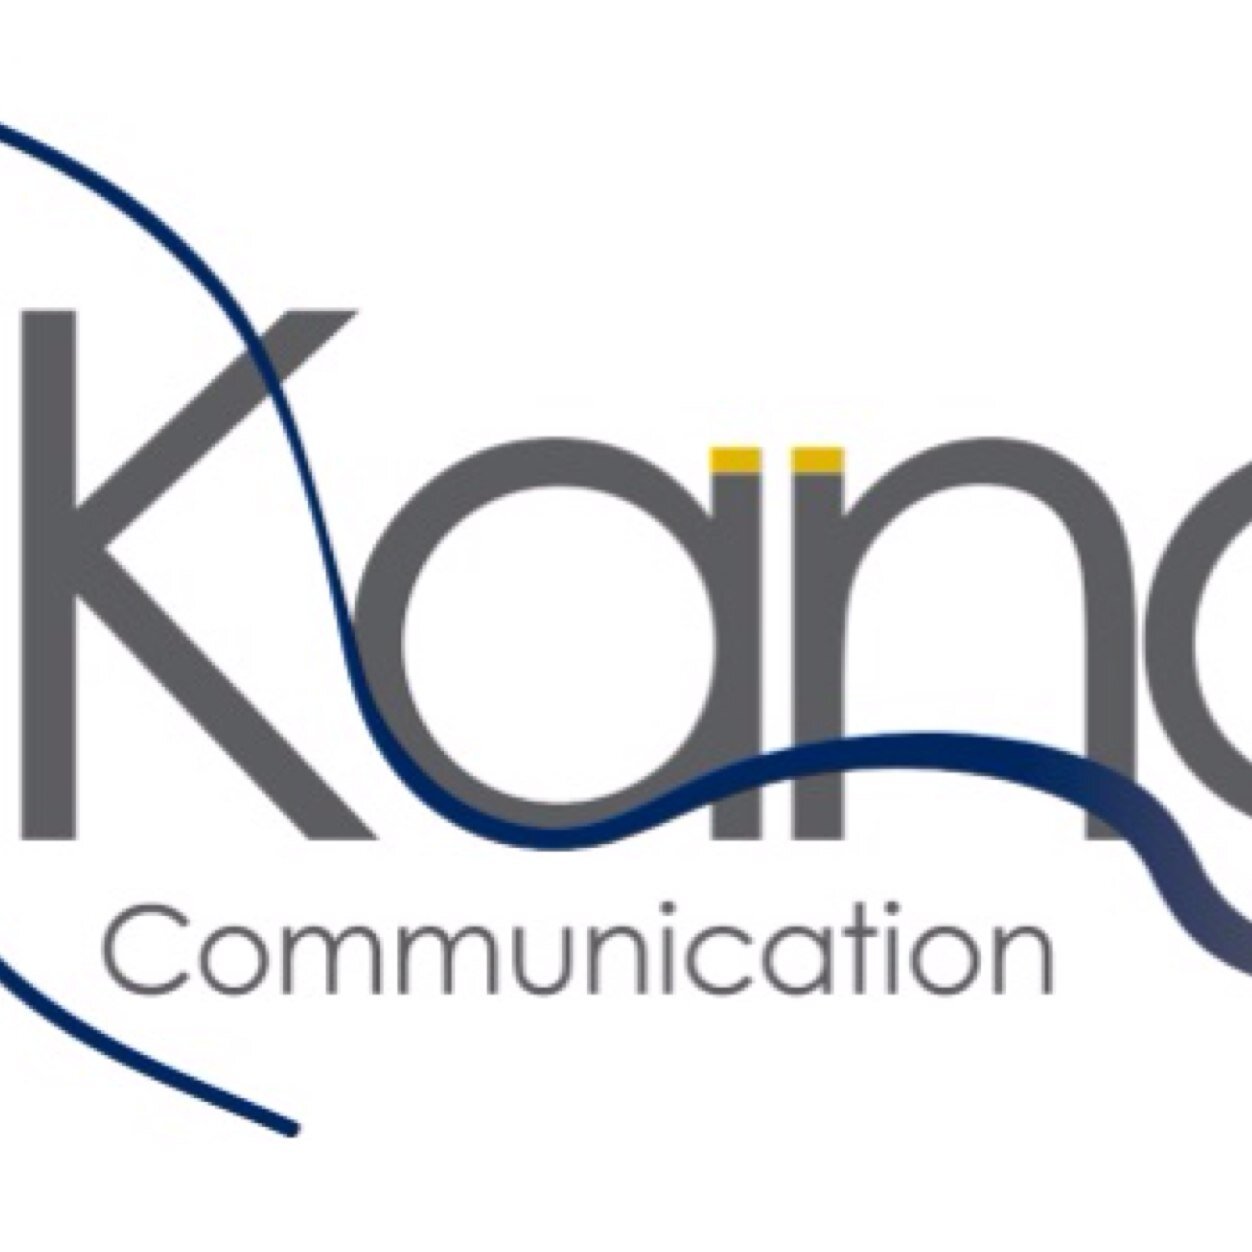 Kanga Communication